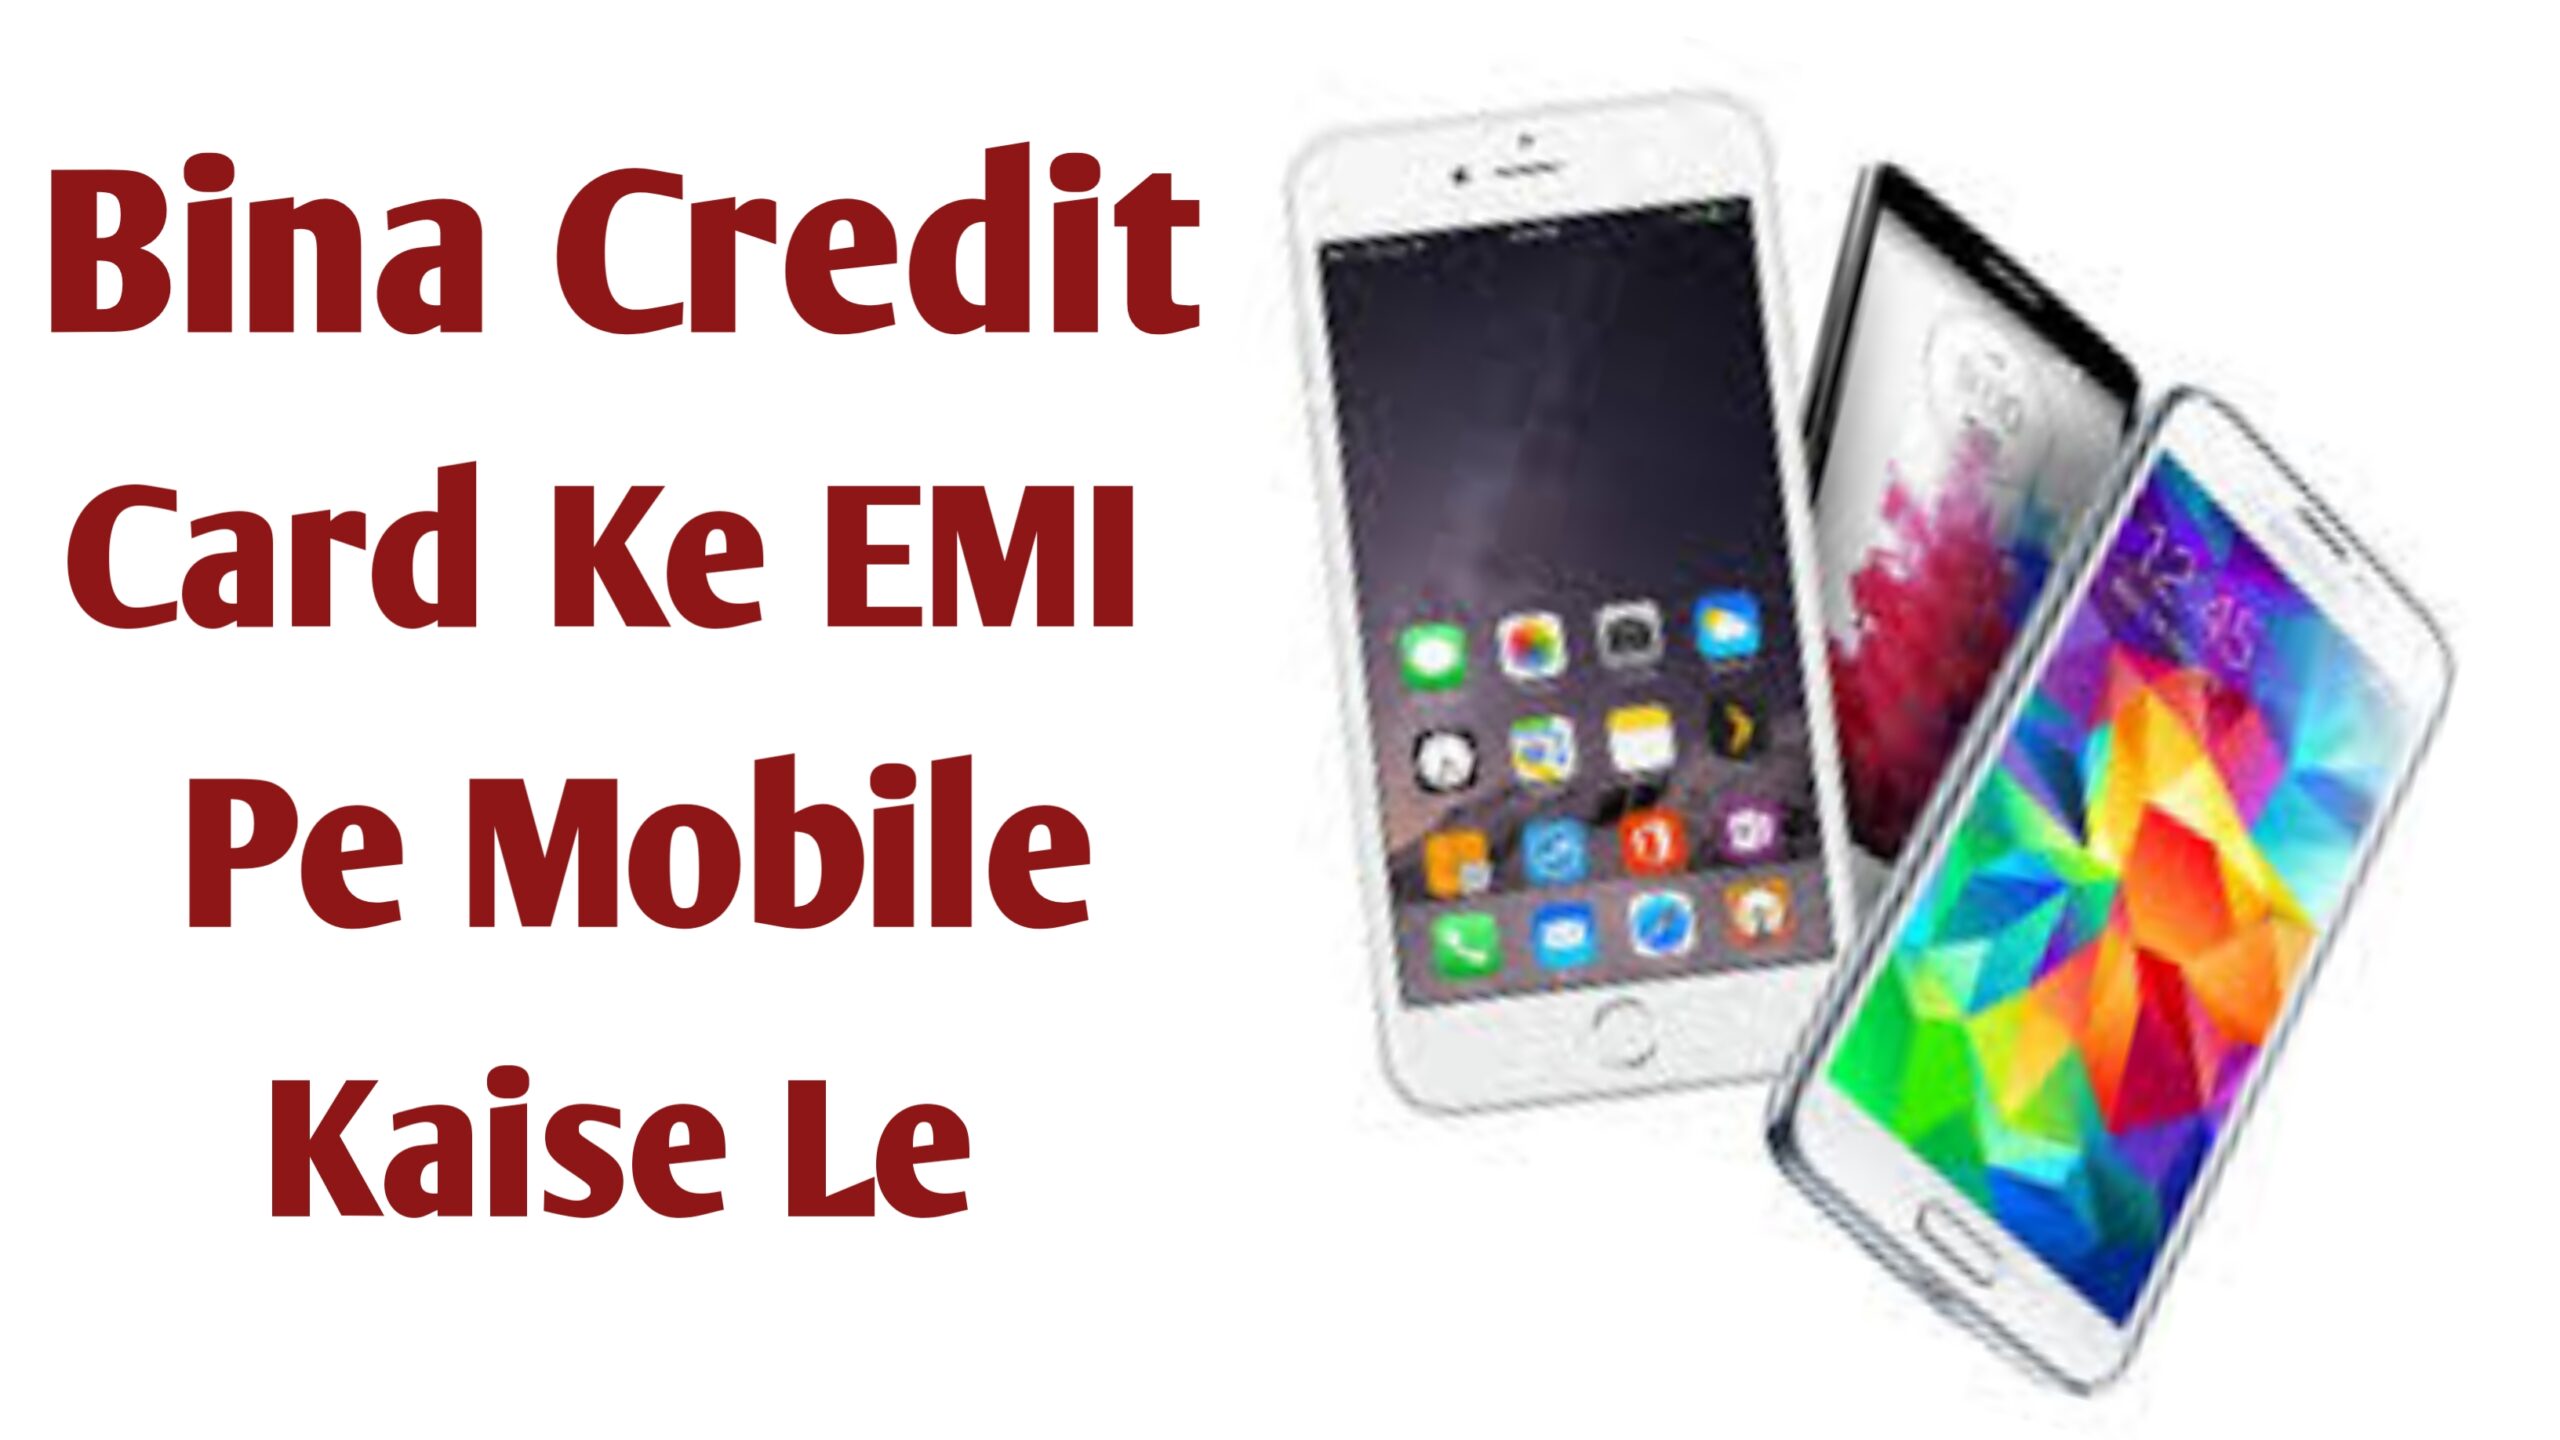 Bina Credit Card Ke EMI Pe Mobile Kaise Le